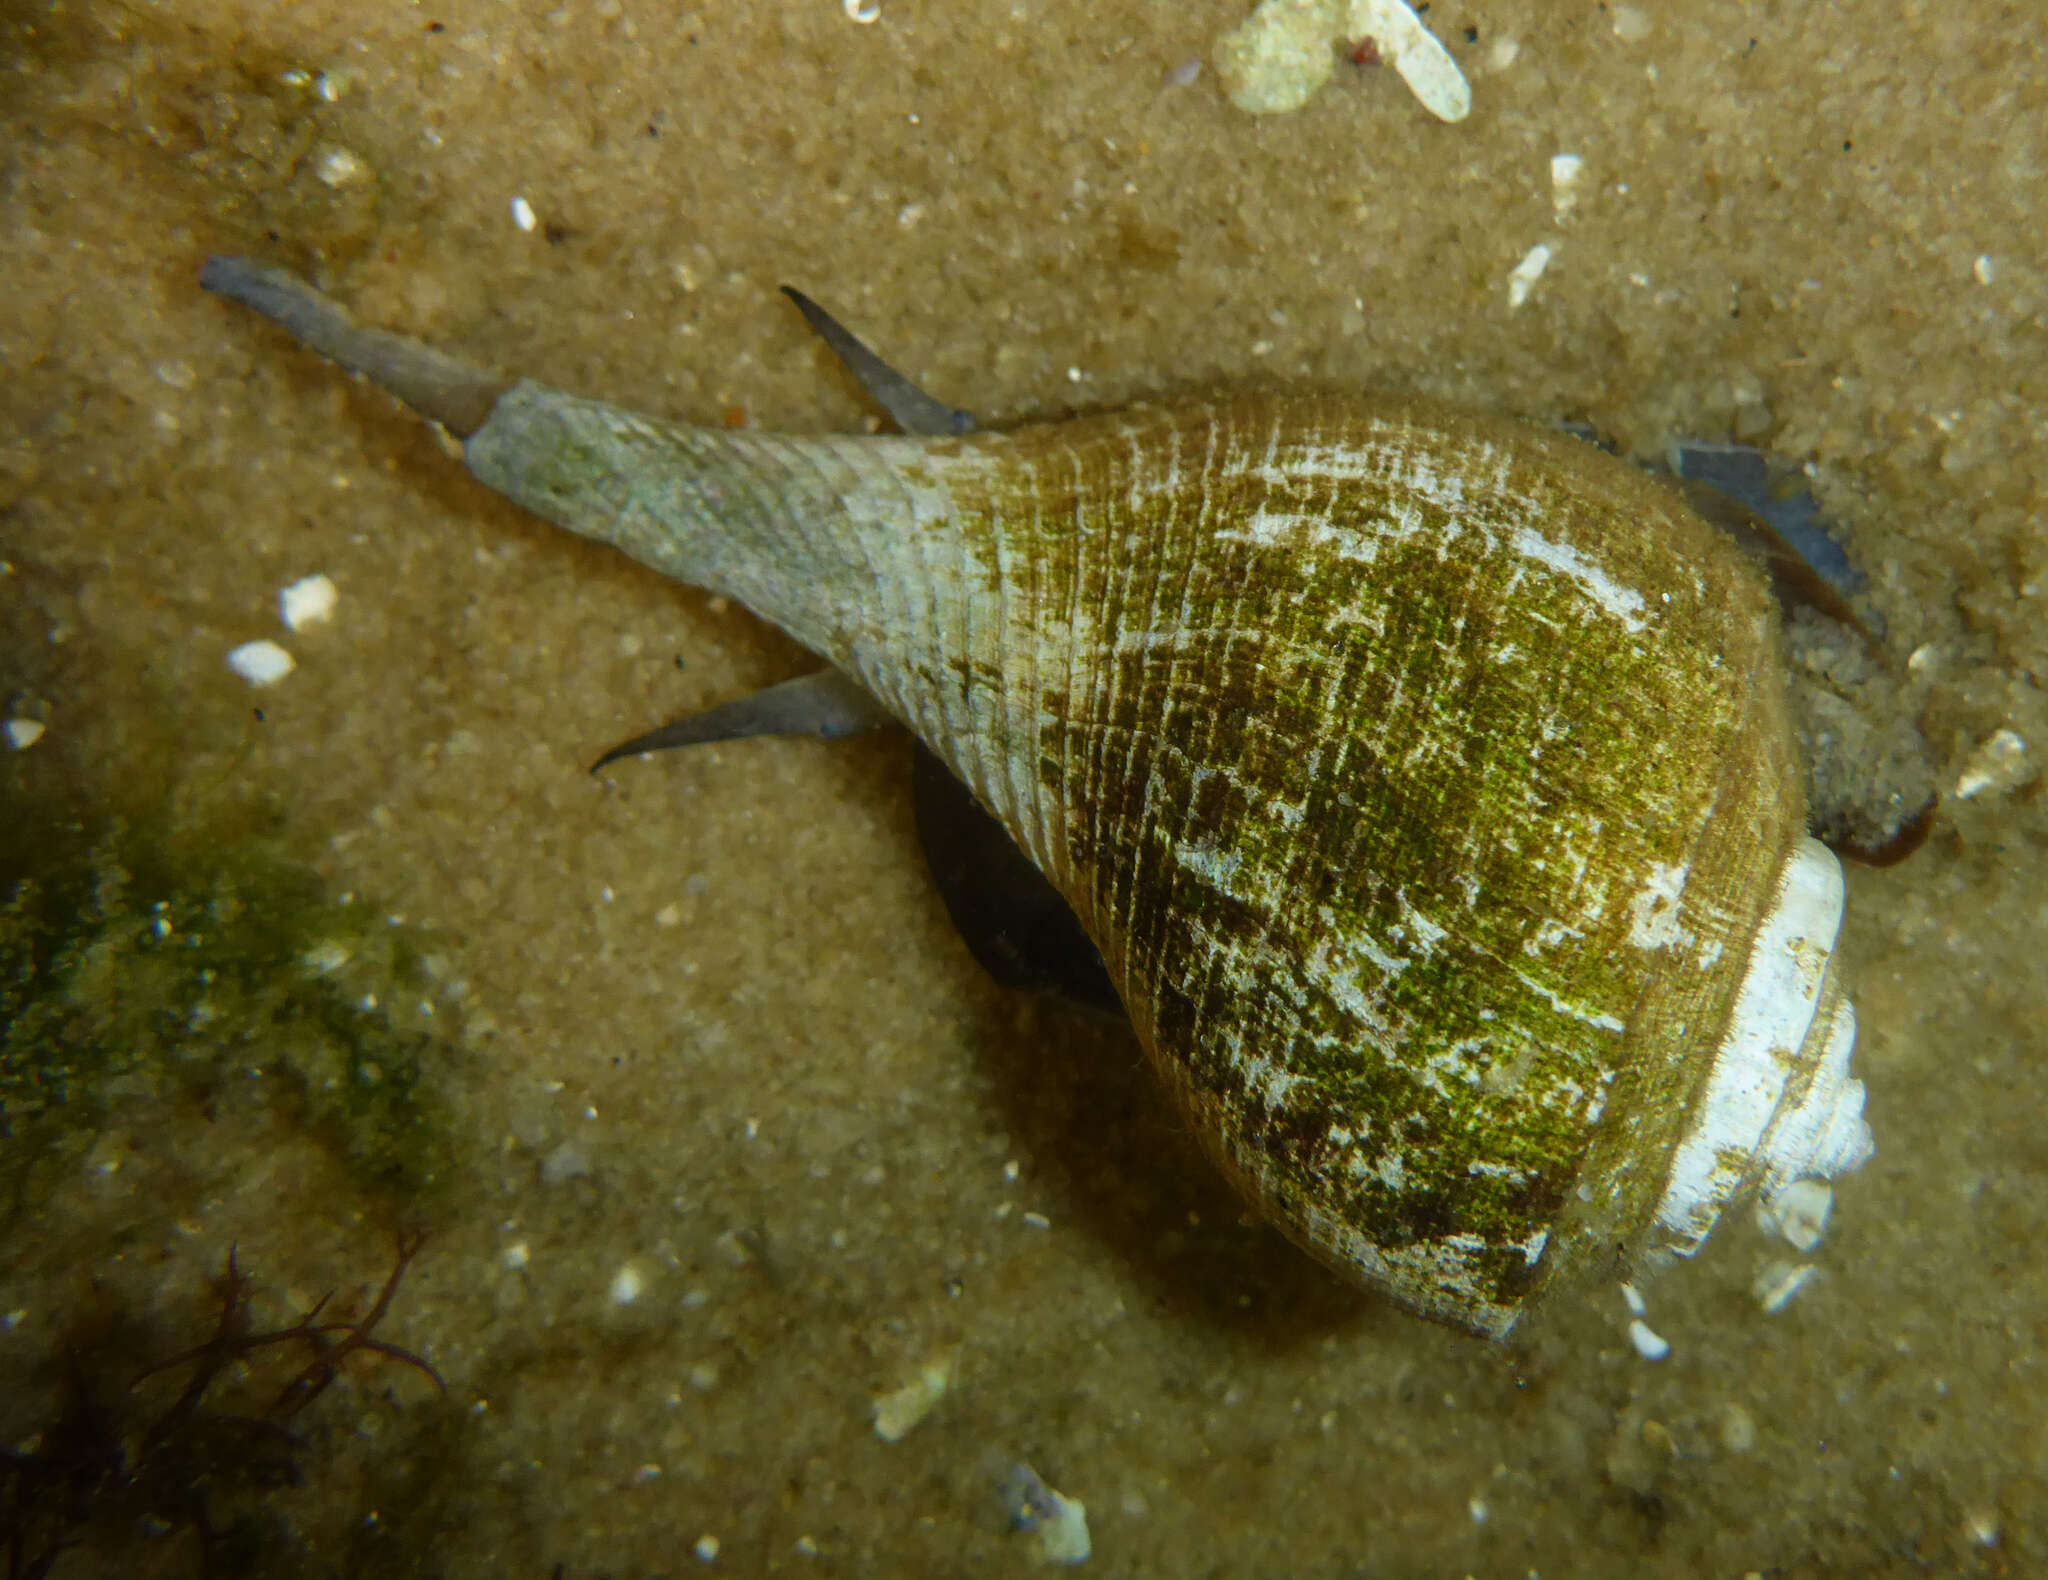 Image of pear whelk